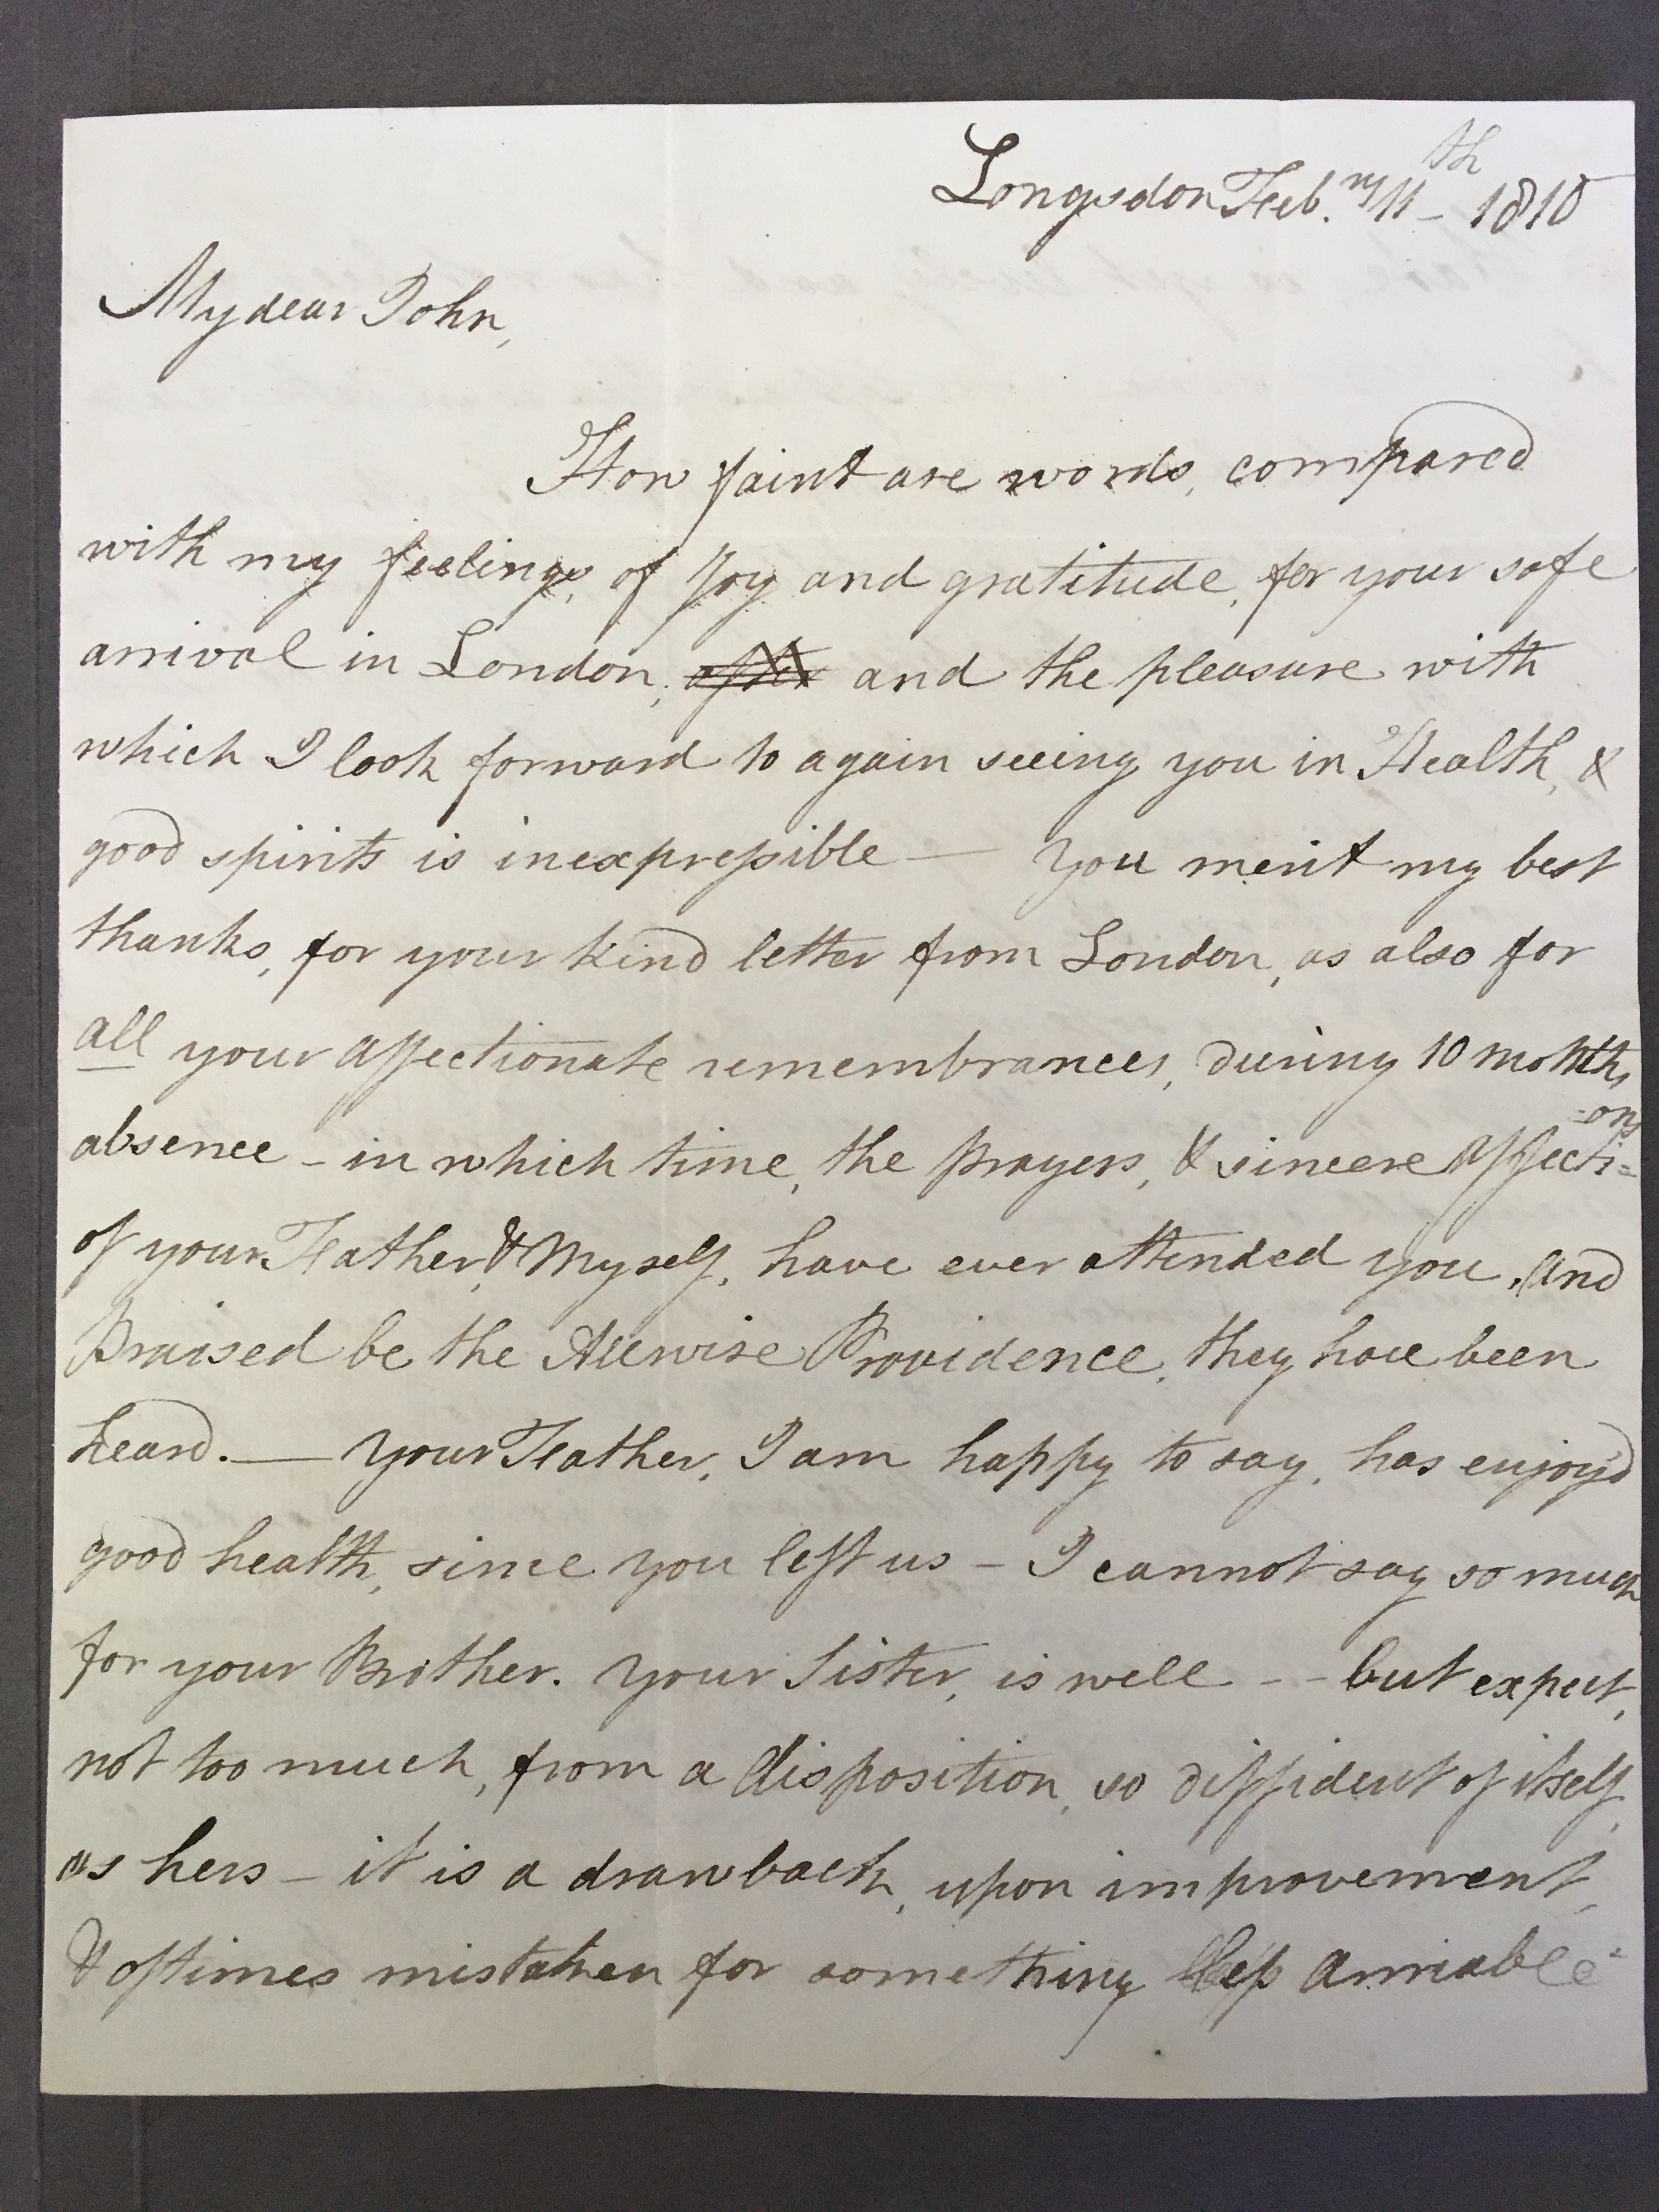 Image #1 of letter: Elizabeth Longsdon (sen) to John Longsdon, 11 February 1810